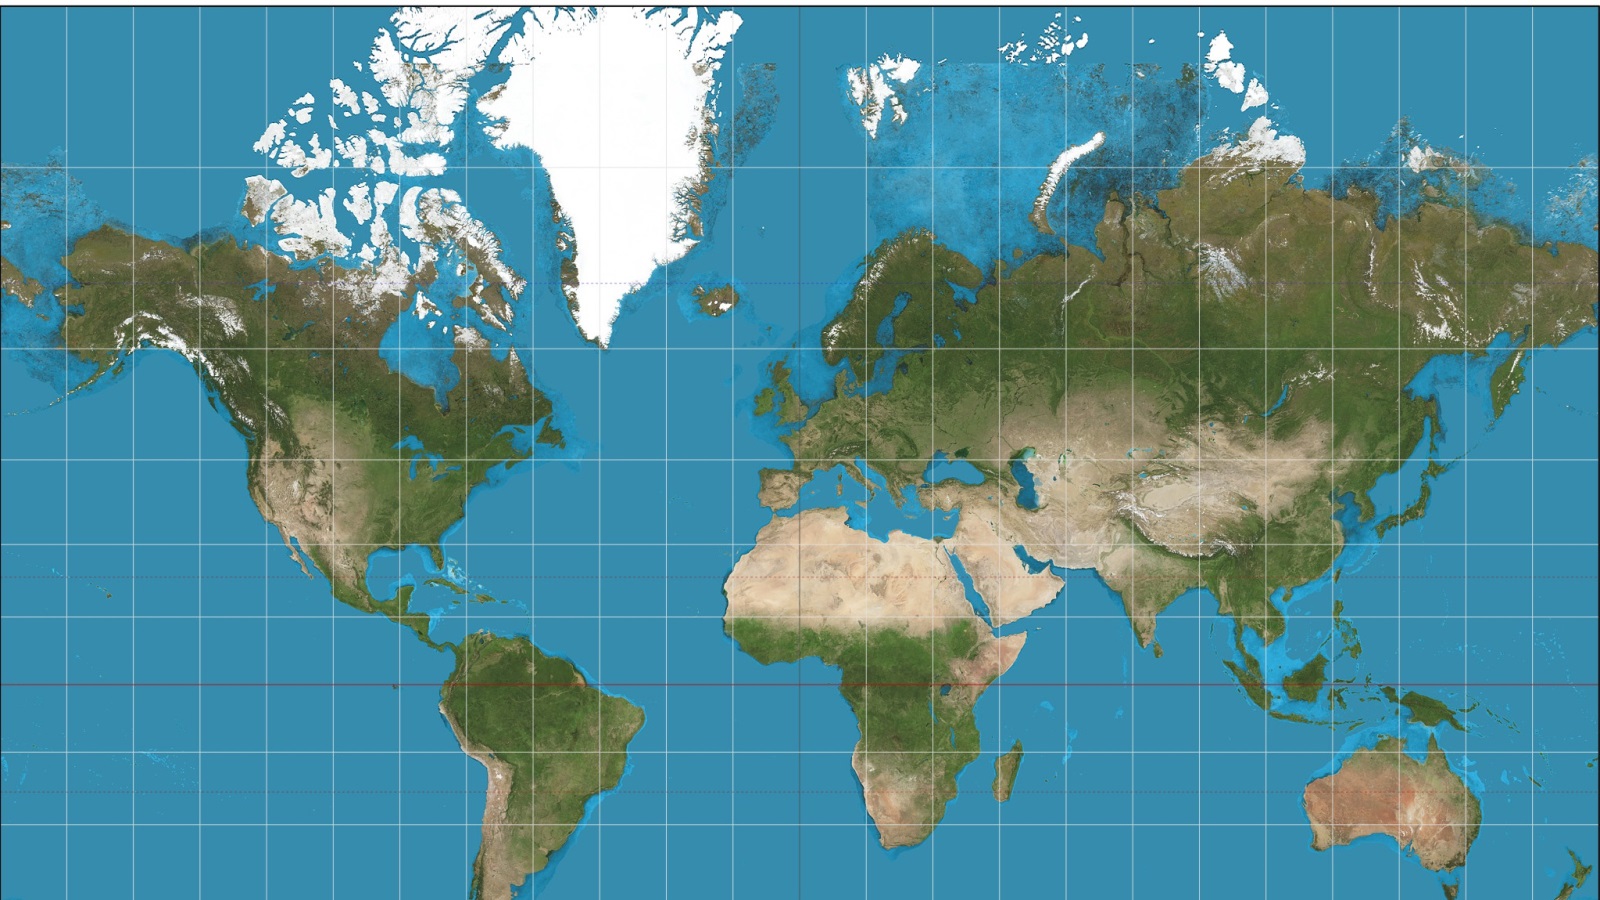 إسقاط ميركاتور يعتمد الأسلوب الأسطواني لرسم خارطة الأرض بشكل مسطح مما يجعل غرينلاند تبدو أكبر من أفريقيا